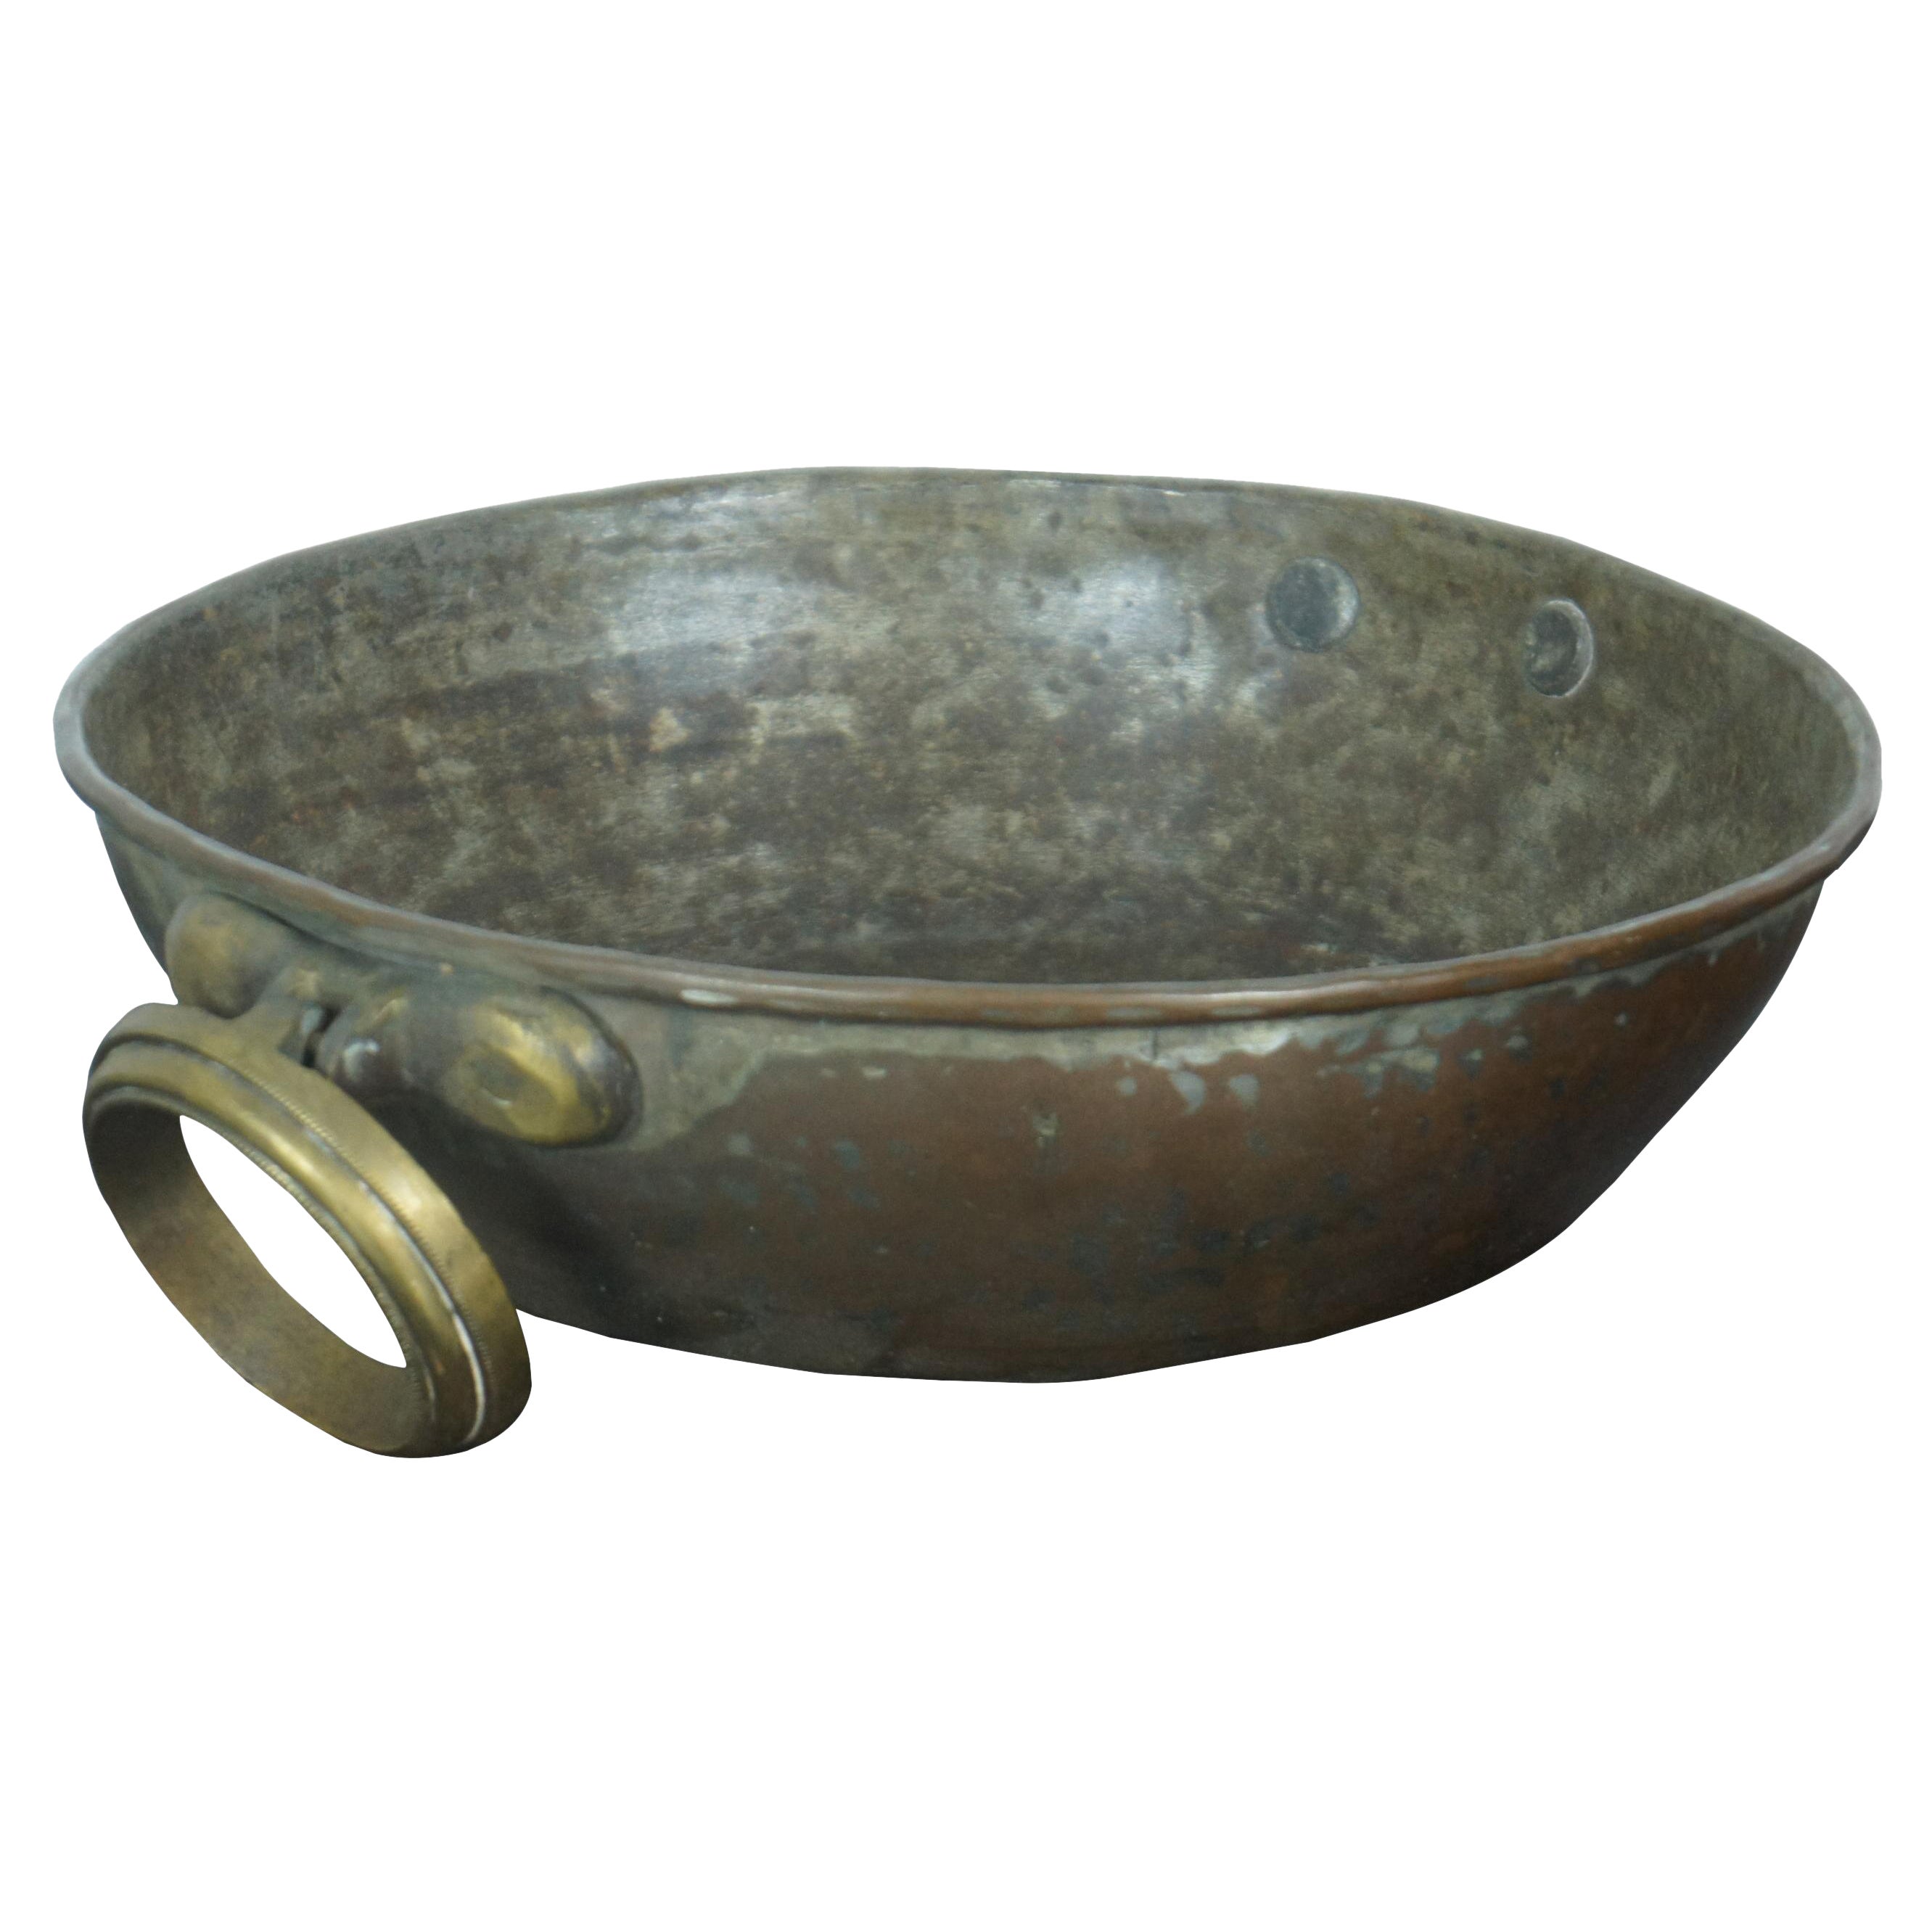 Antique Copper 15 3/8 Cauldron Pot Candy Apple Butter Kettle Bowl